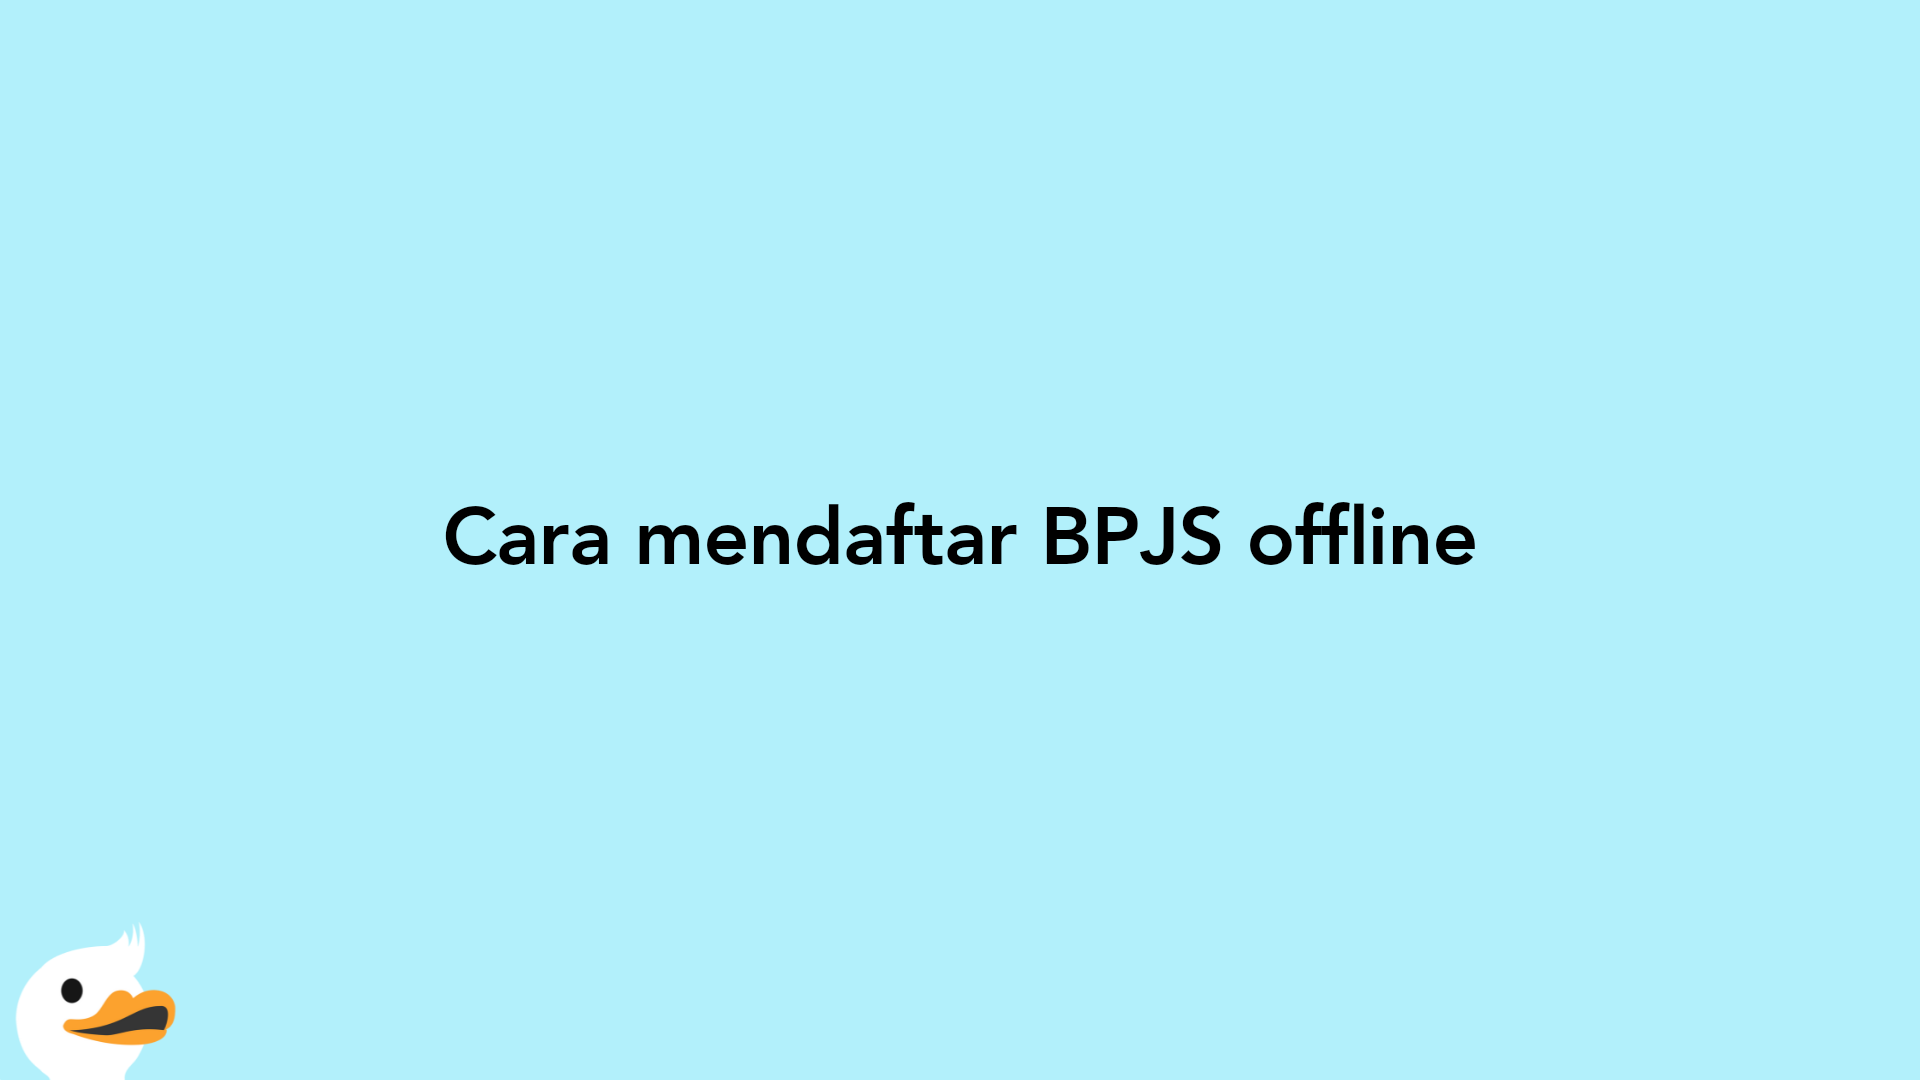 Cara mendaftar BPJS offline